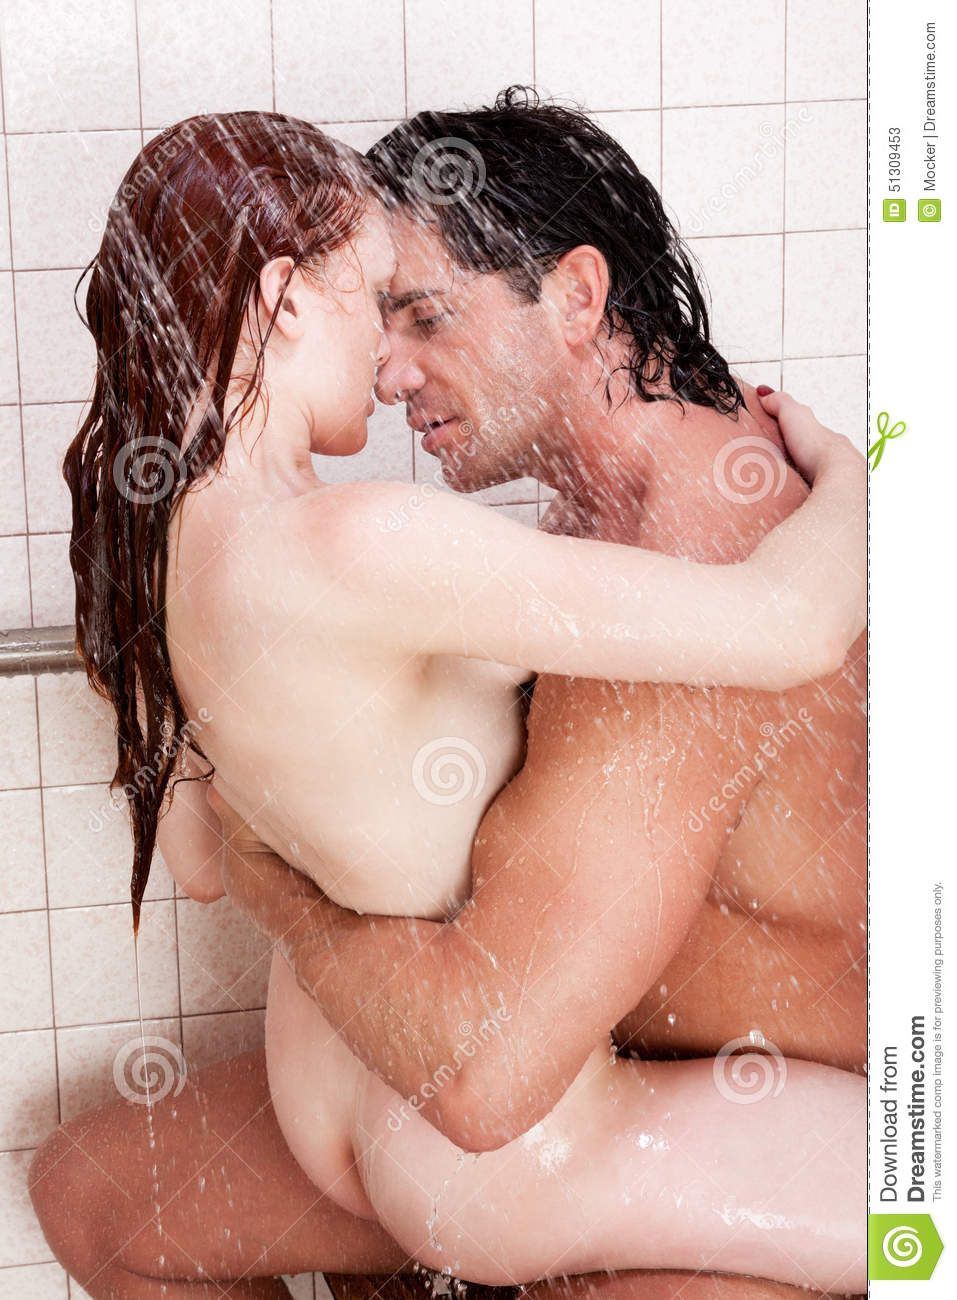 Naked girl couple in shower